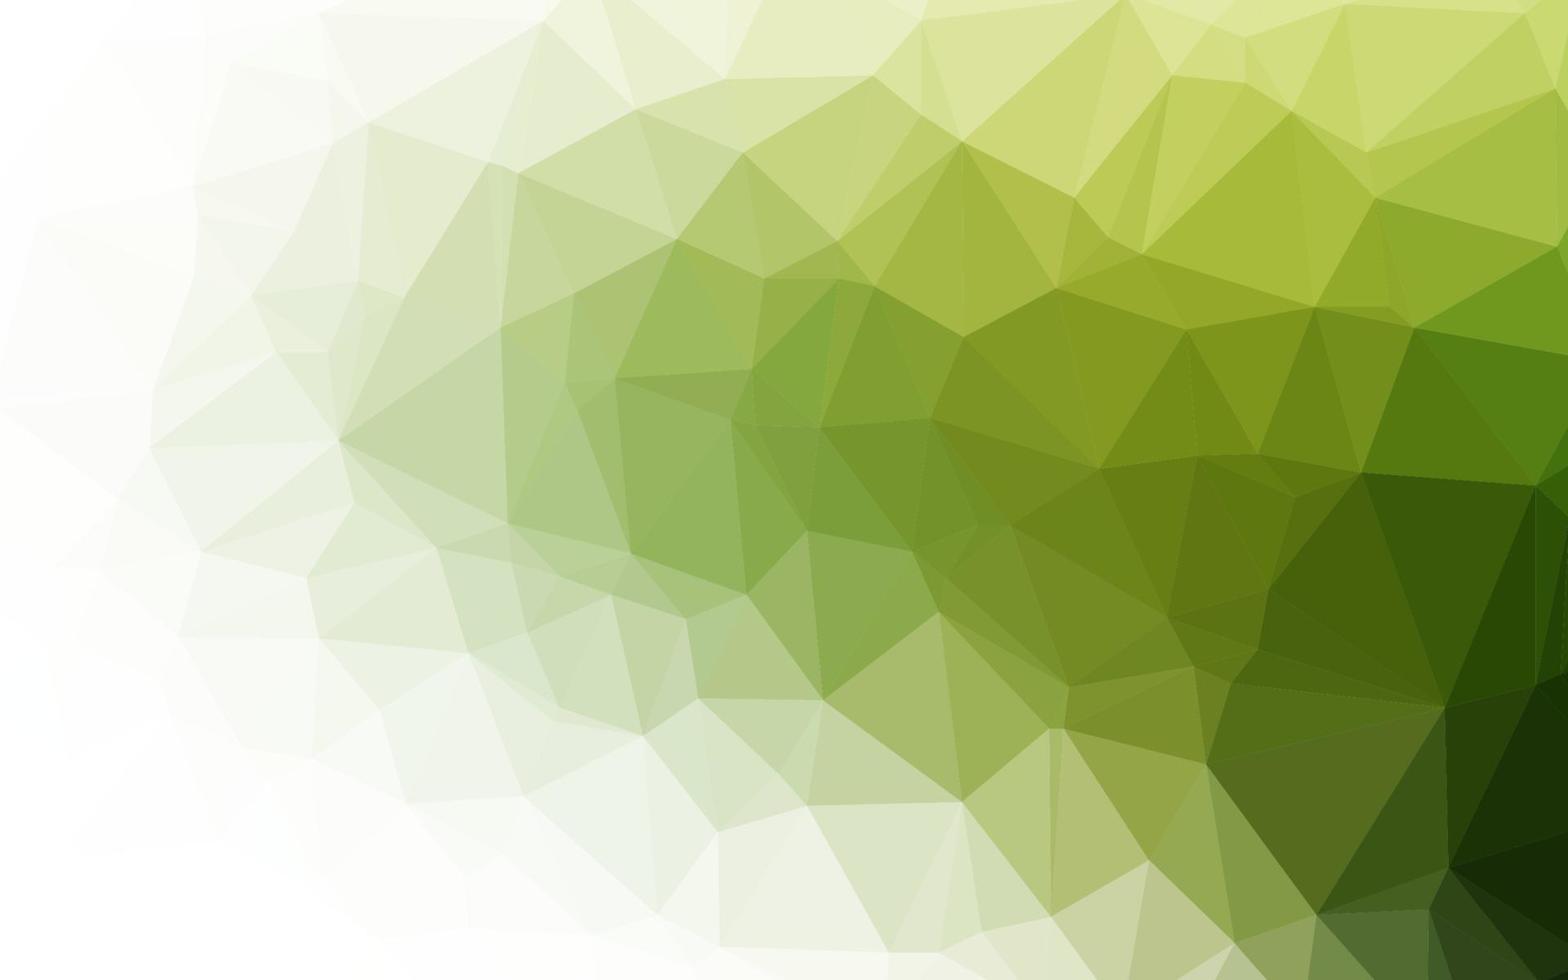 mise en page abstraite de polygone vecteur vert clair.